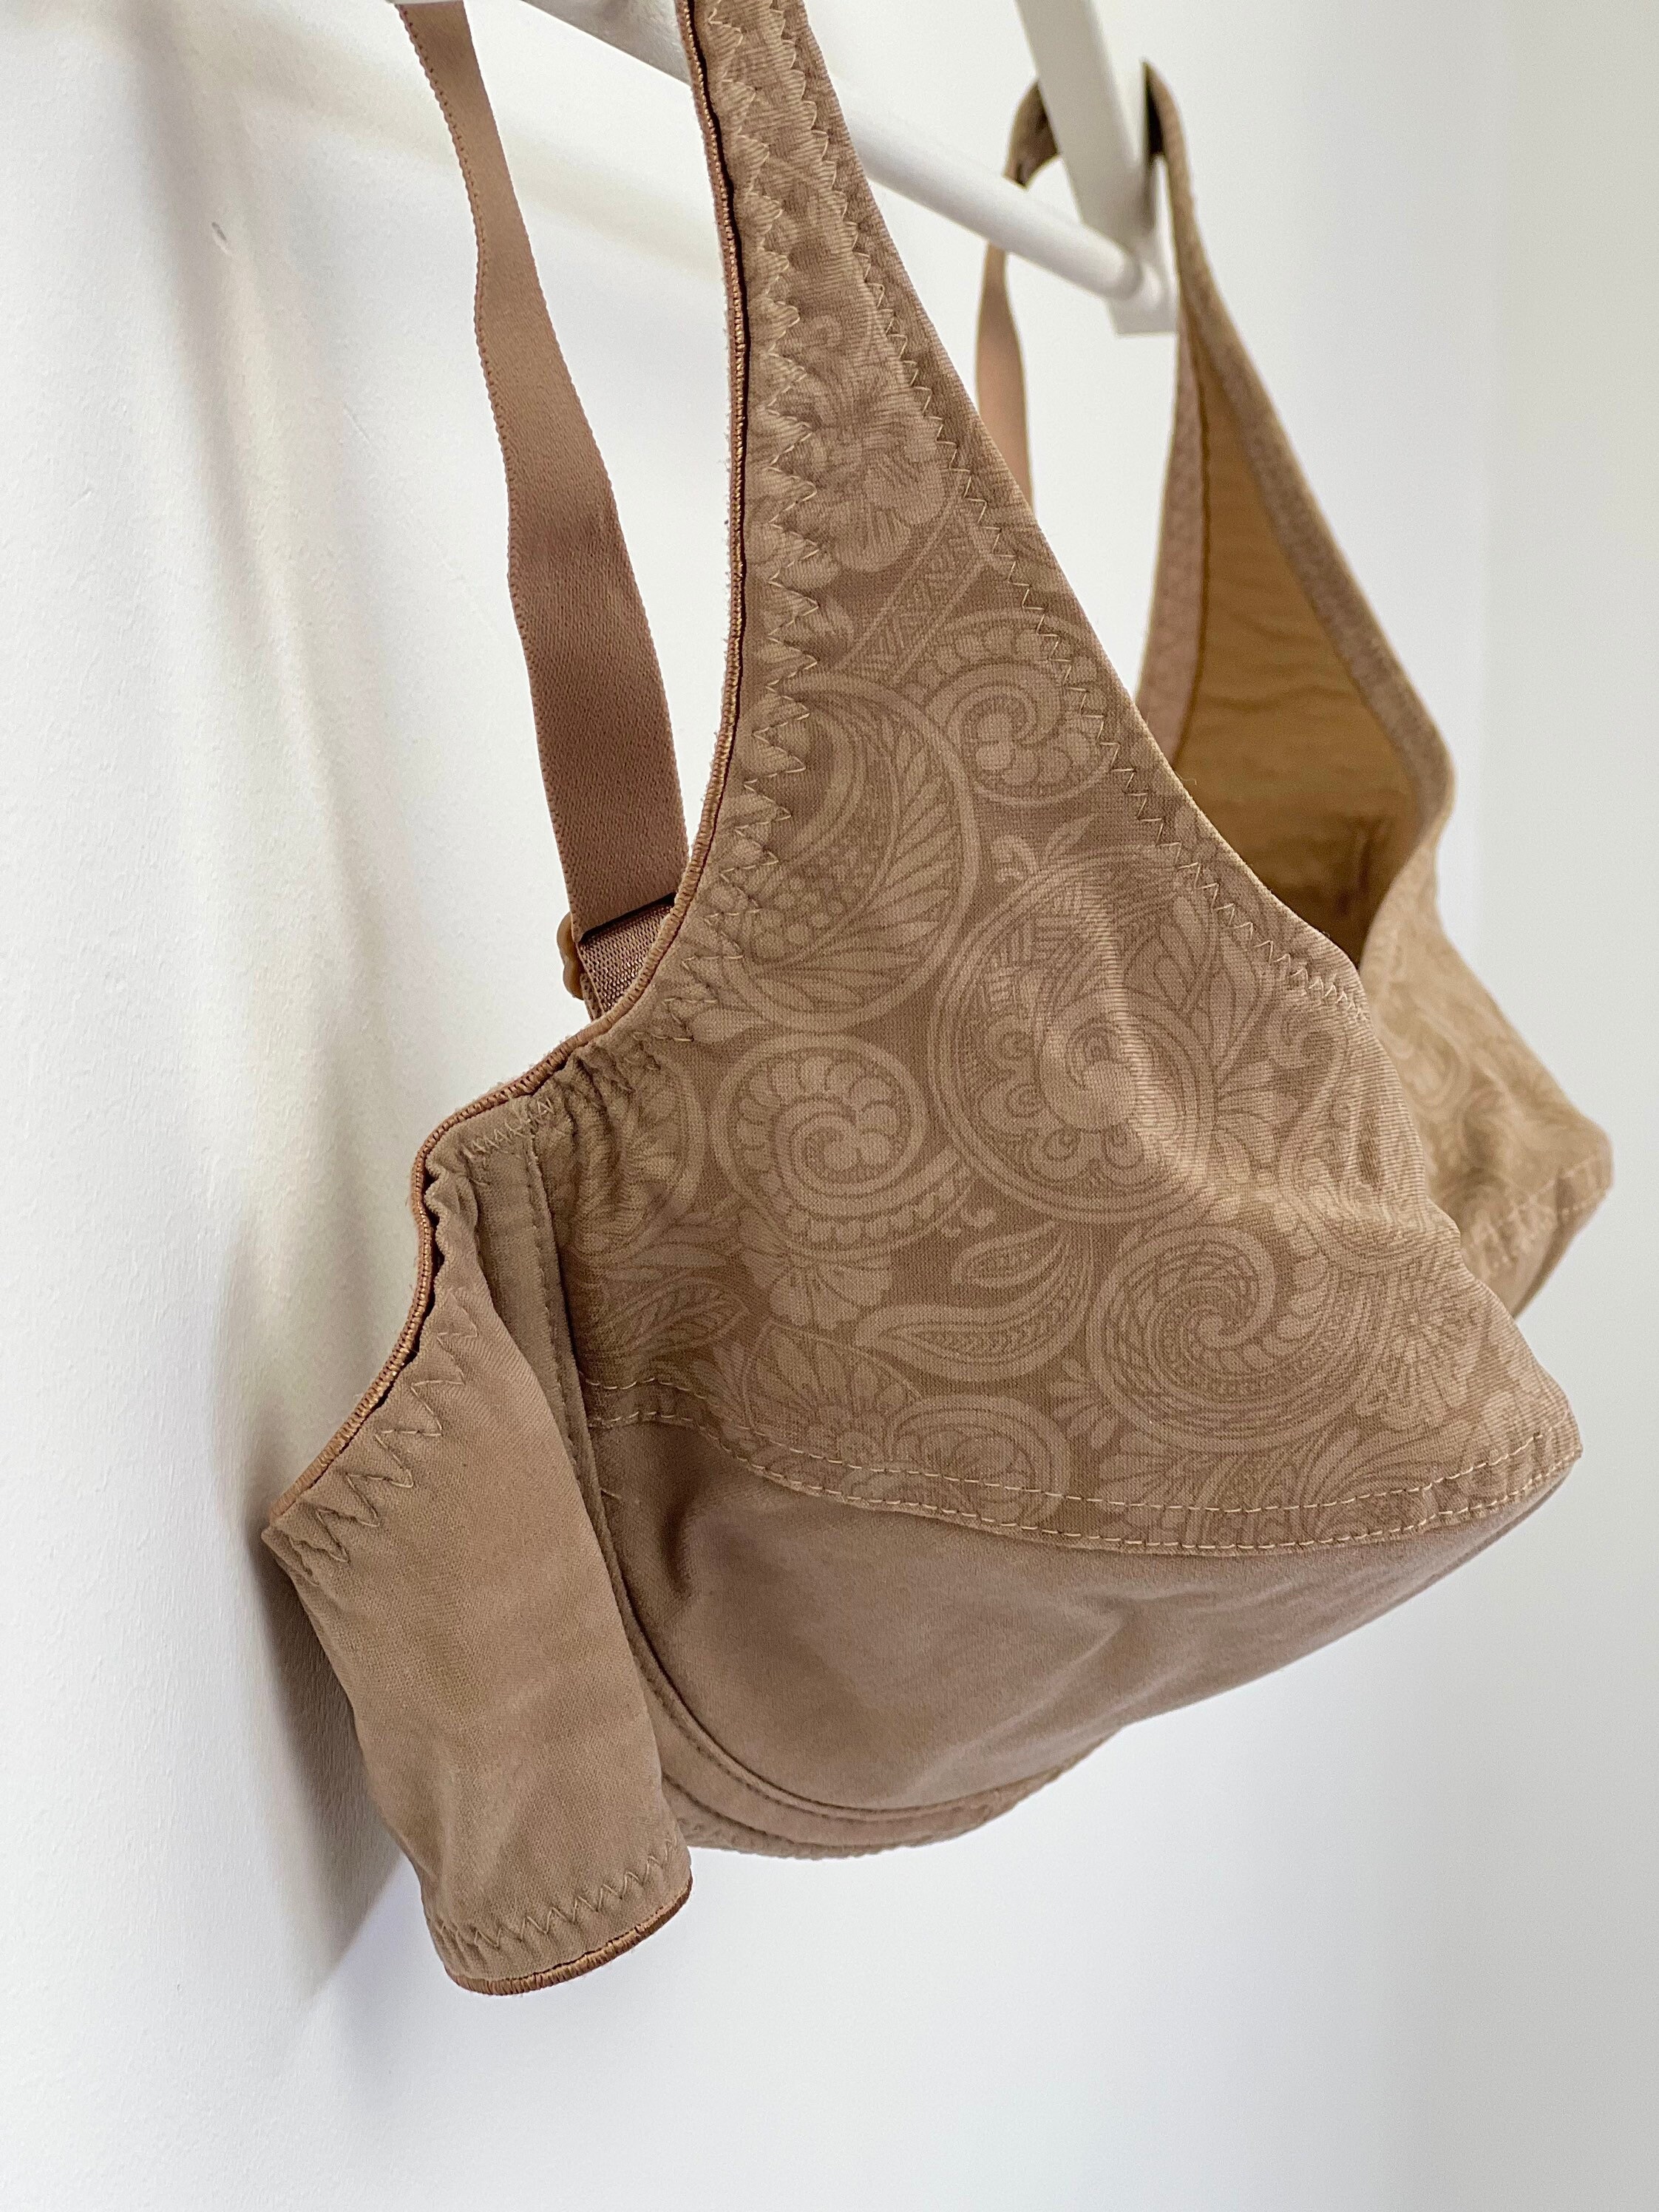 Vintage Beige Bra for Women Underwear Lingerie, Size Eu 80D, F 95D, Gb 36d,made  in Germany 